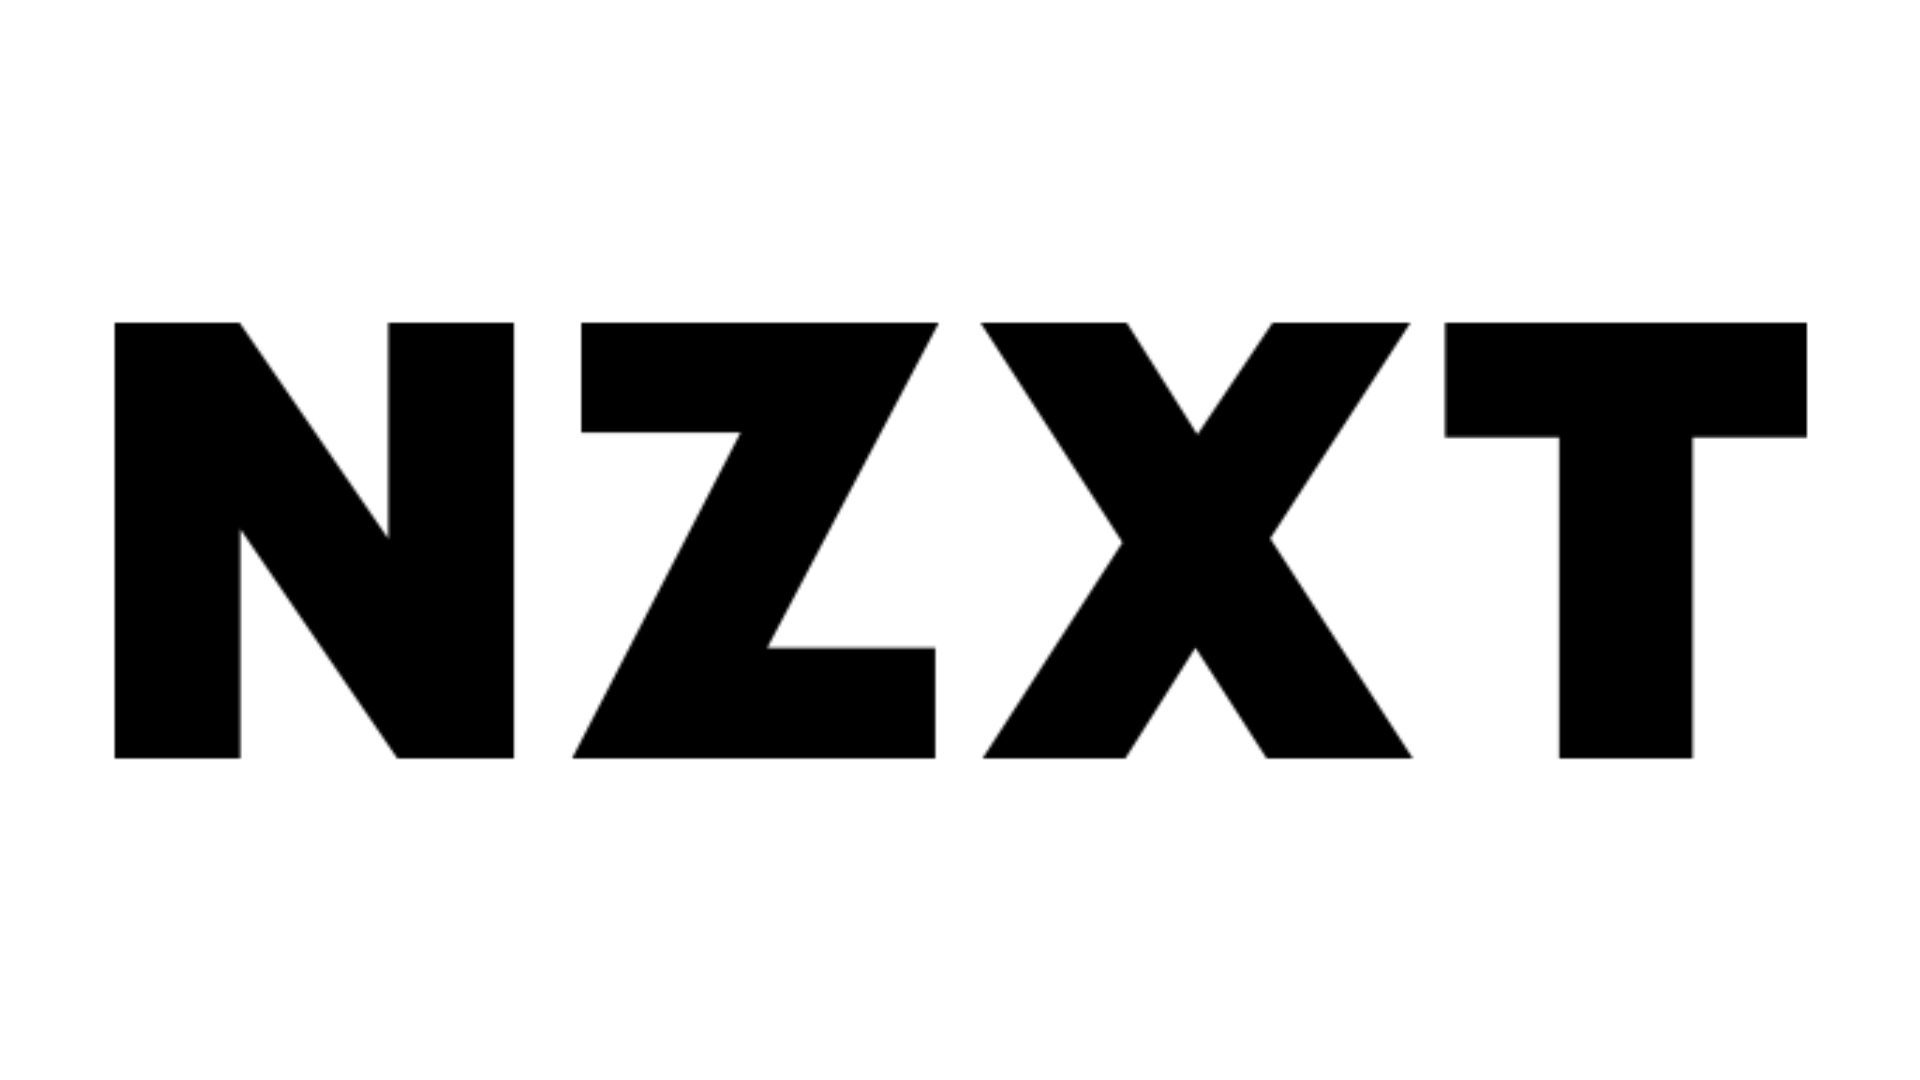 Los mejores sitios web para compilaciones de PC personalizadas, número 2: NZXT. El logotipo está sobre un fondo negro